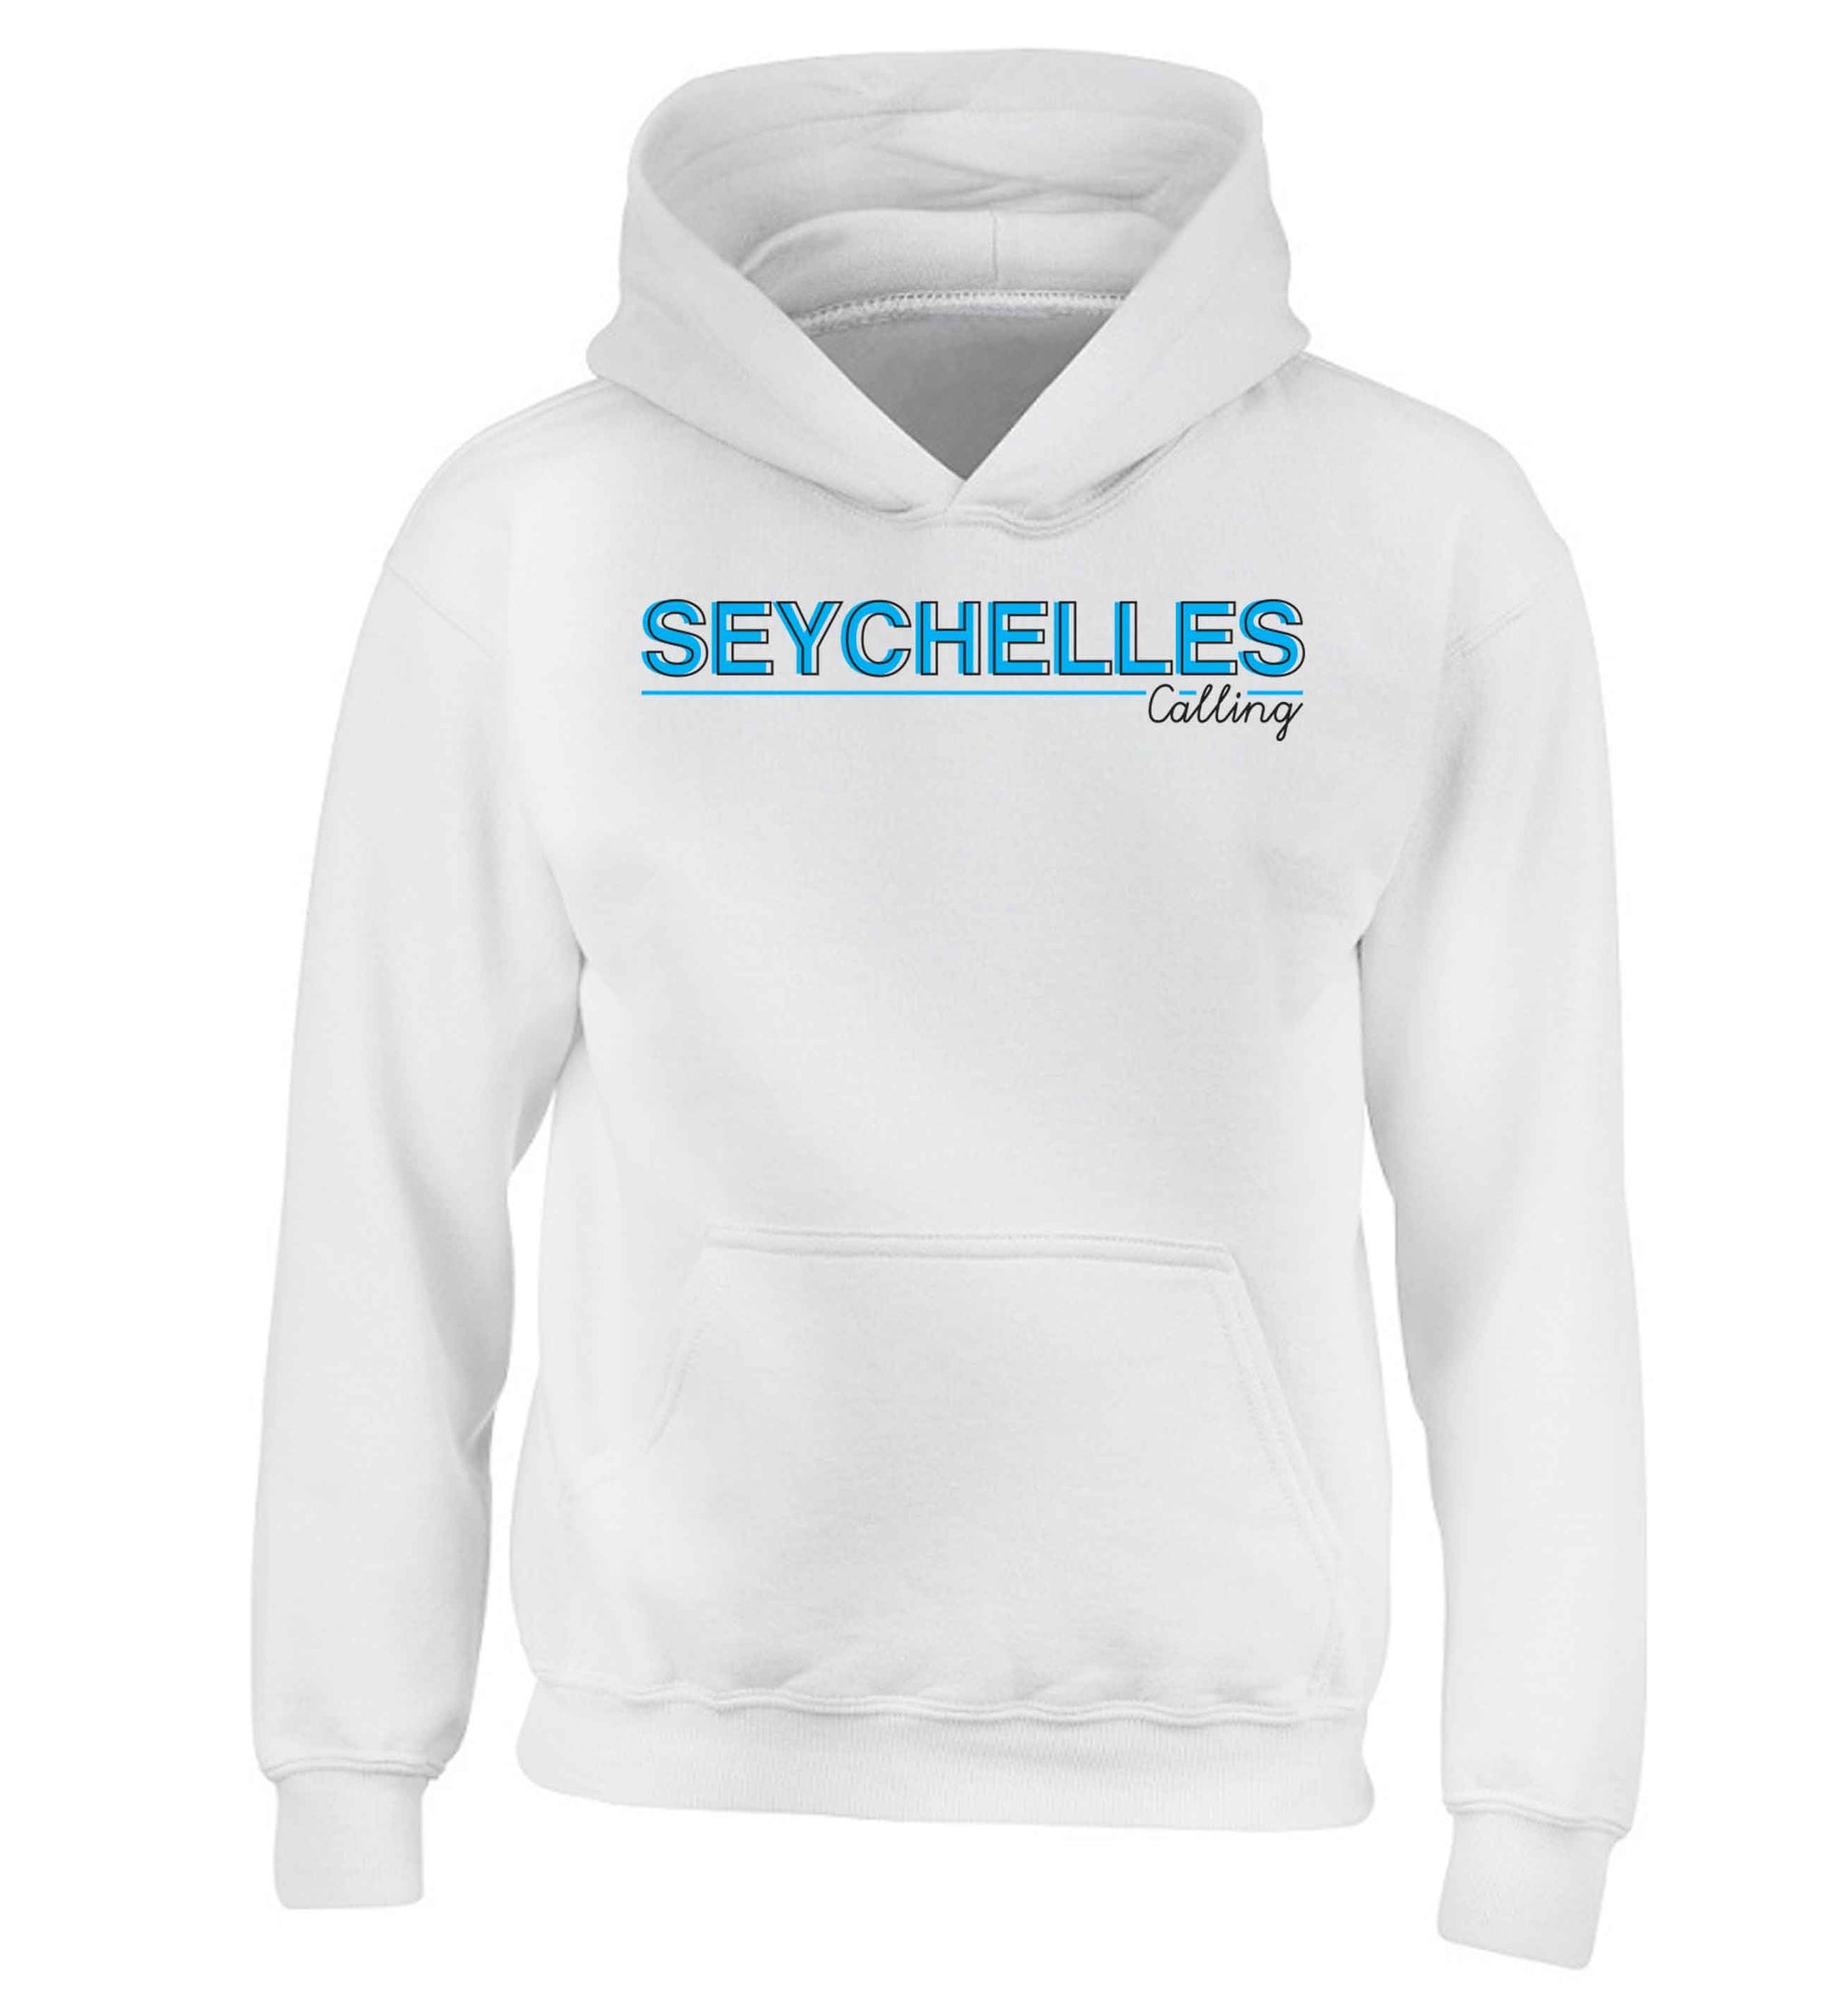 Seychelles calling children's white hoodie 12-13 Years